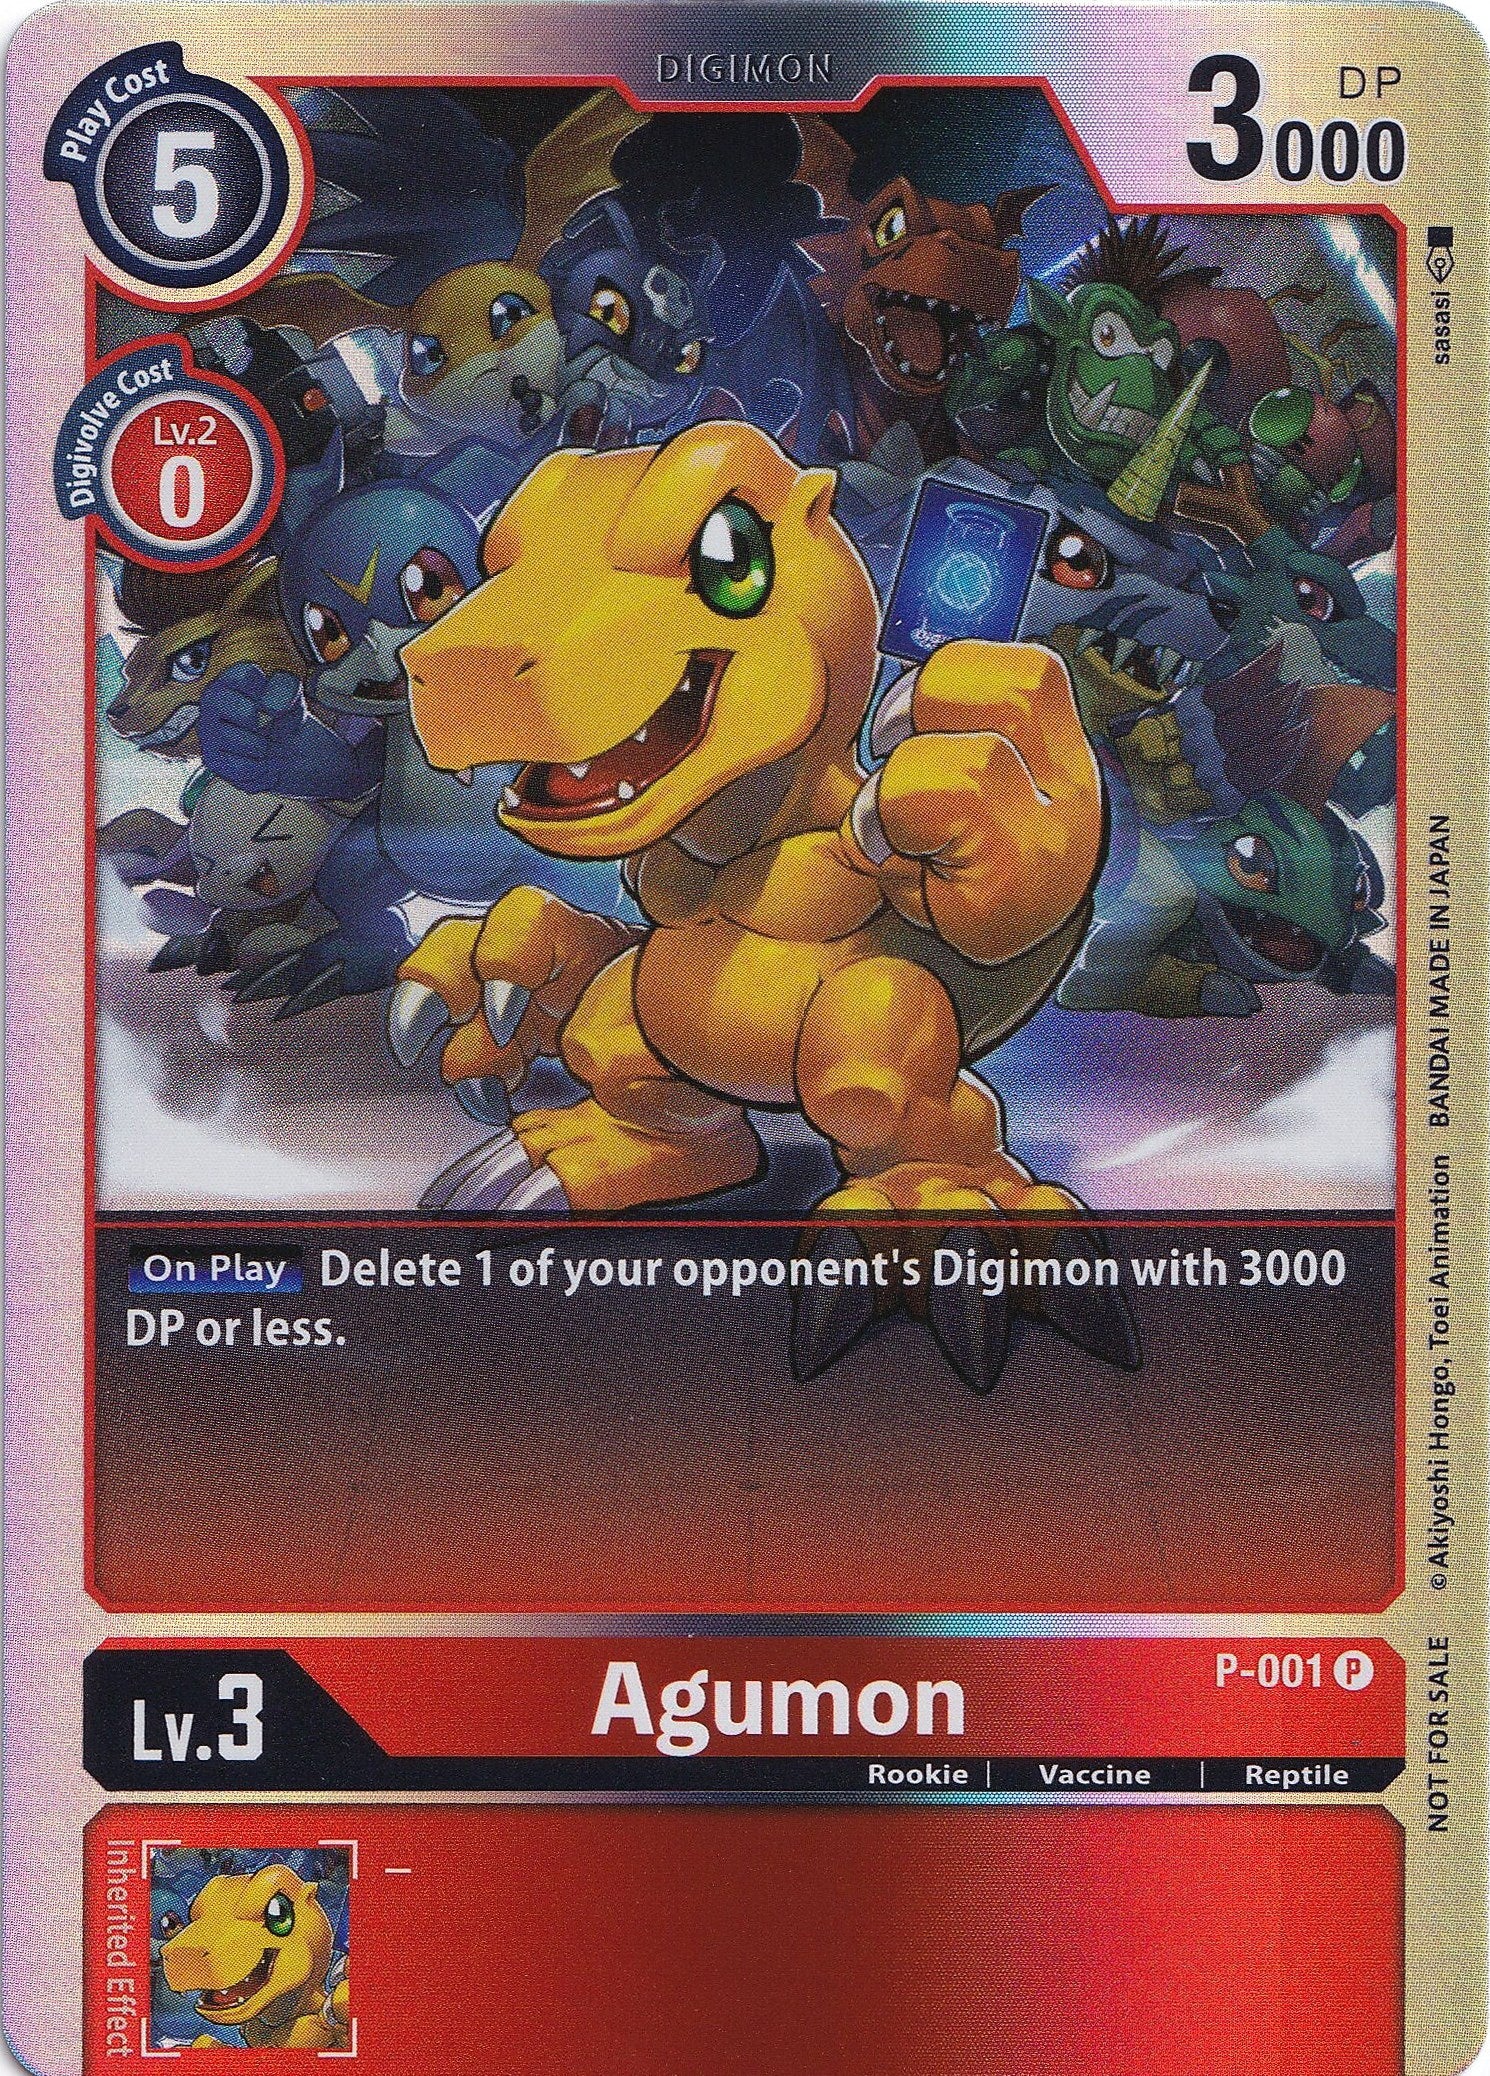 Agumon - P-001 (Rainbow Foil) [P-001] [Digimon Promotion Cards] Foil